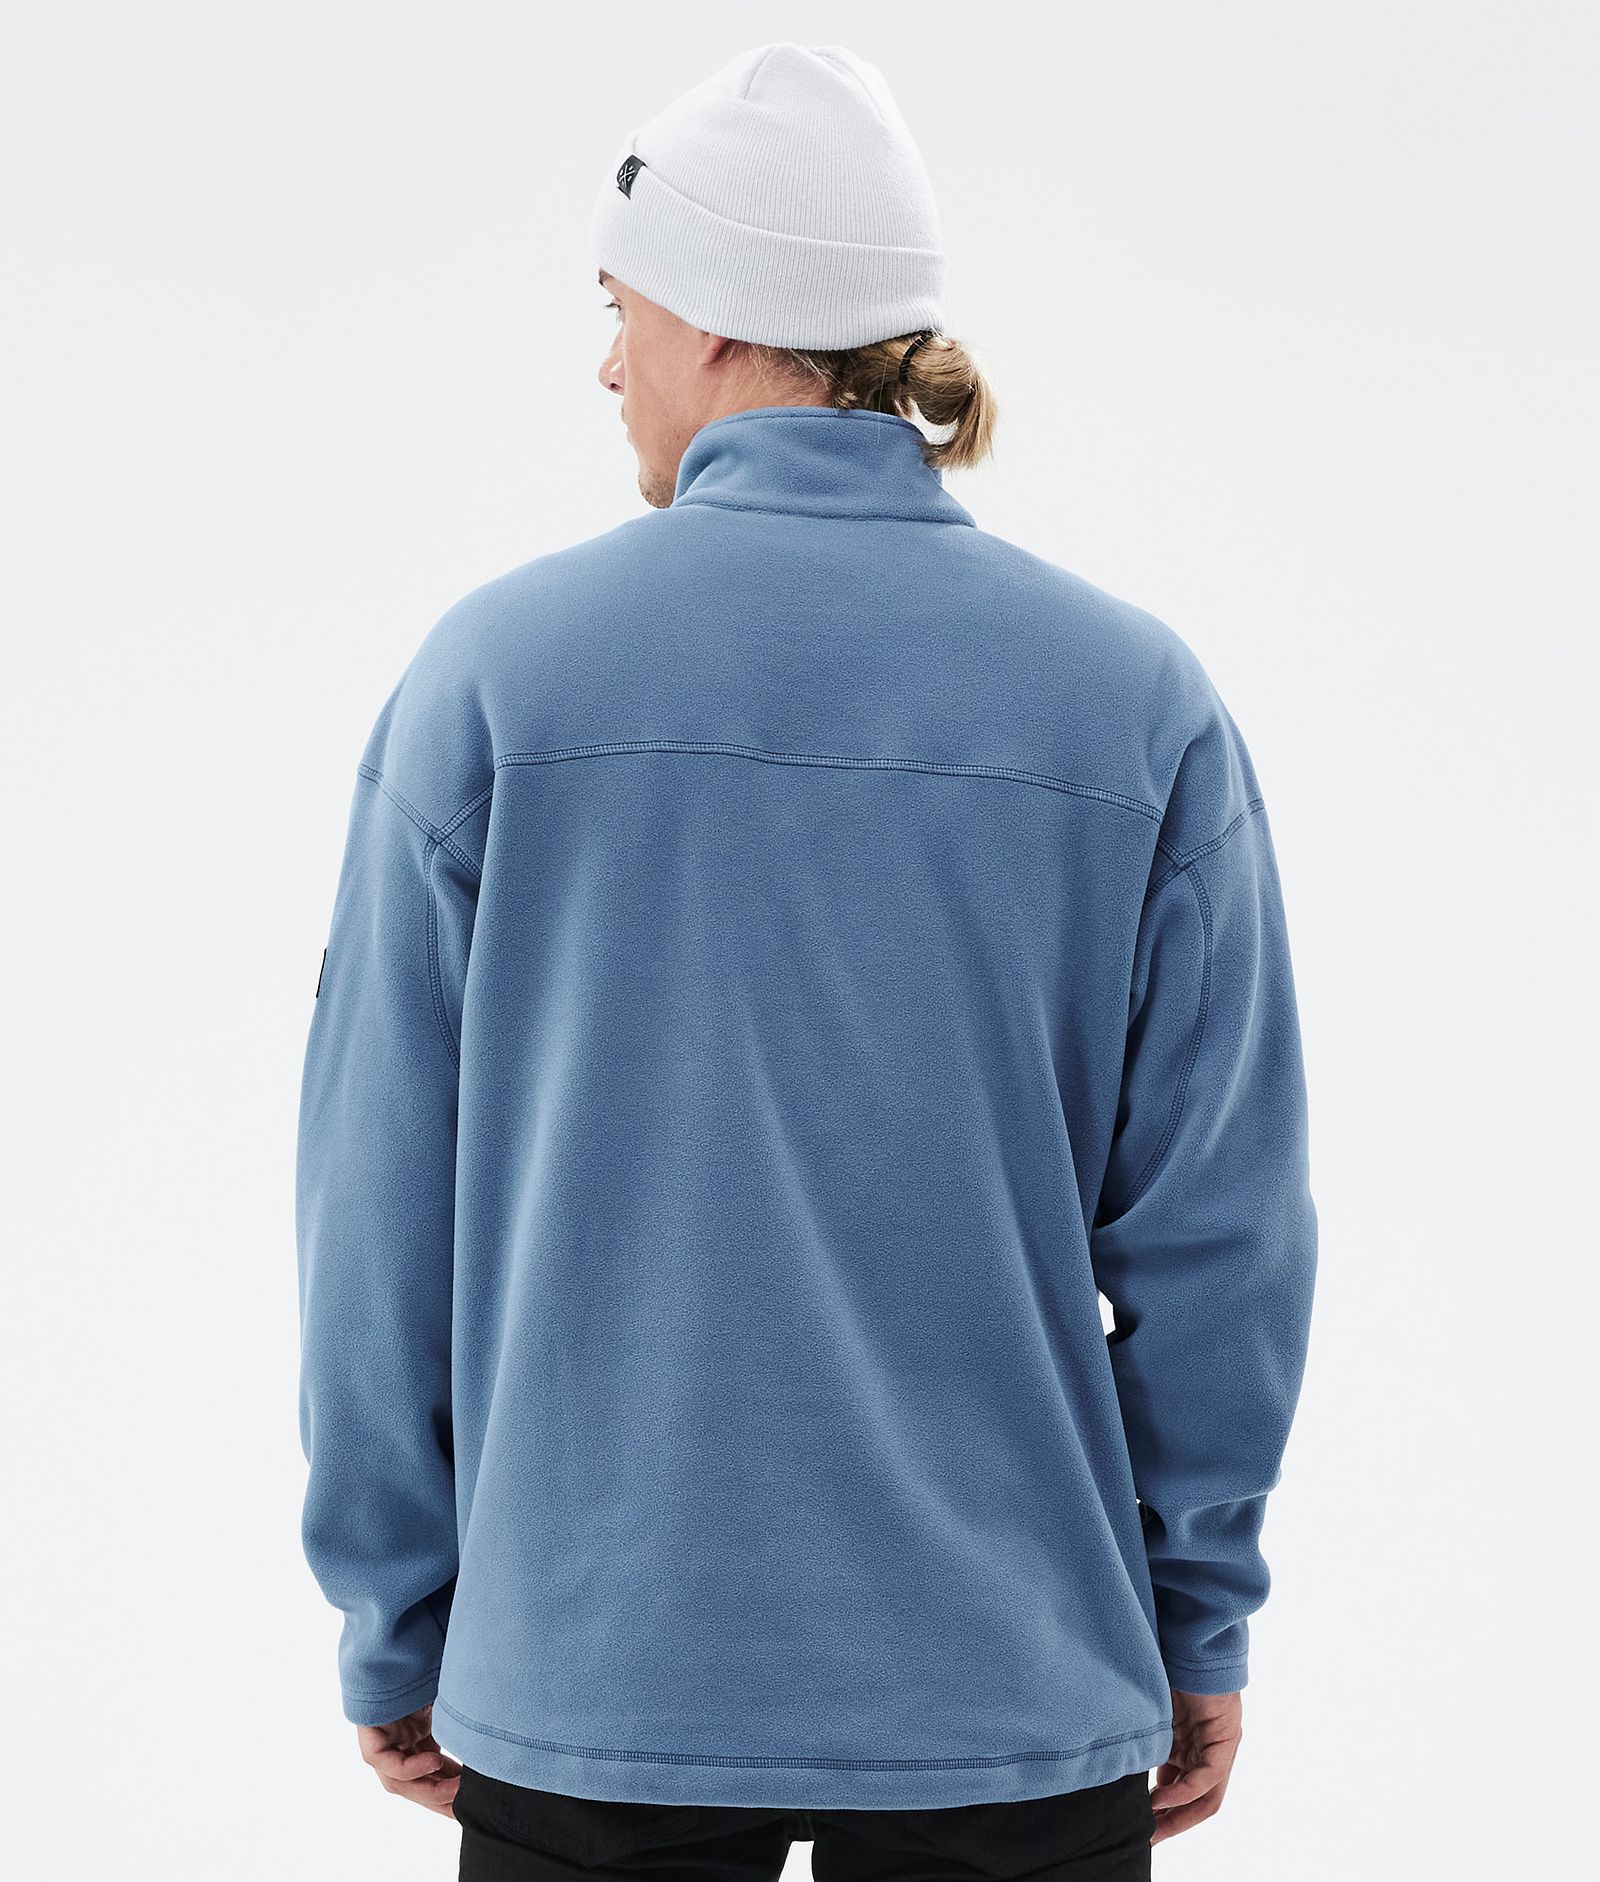 Comfy Fleece Sweater Men Blue Steel, Image 6 of 6